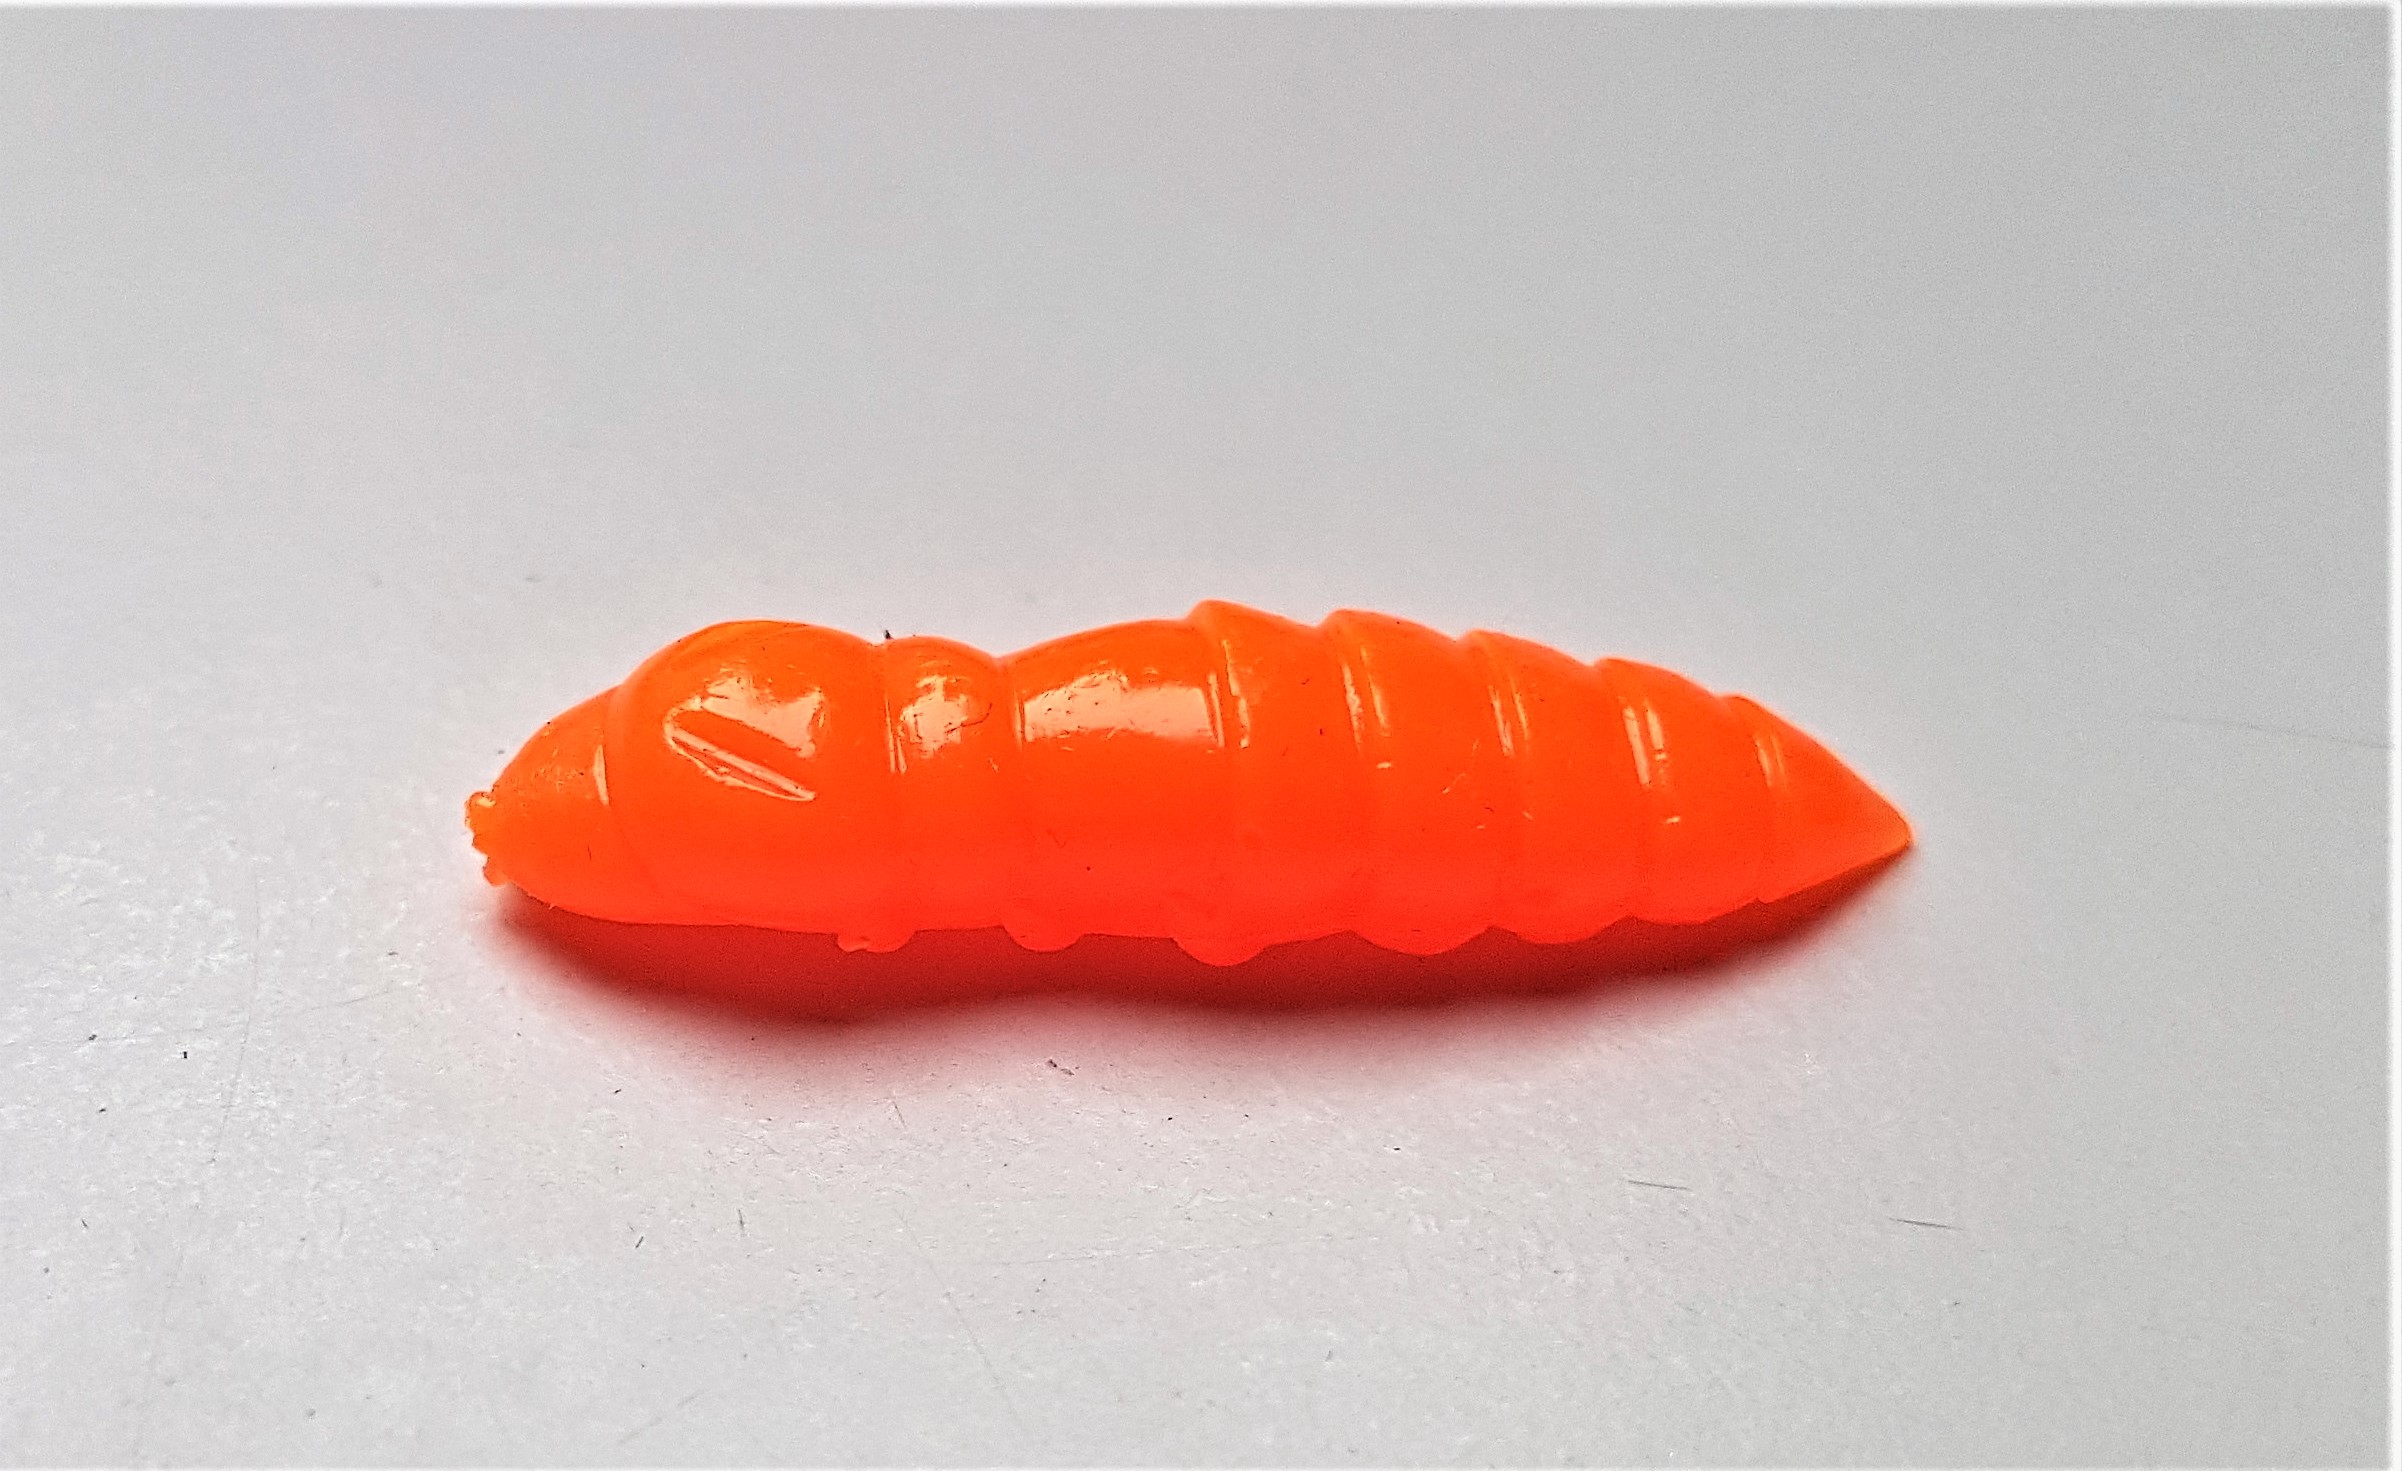 FishUp Pupa 0.9 Mit Käsearoma – Softbait Für Forelle Und Barsch In 2,3 Cm / Farbe: Hot Orange